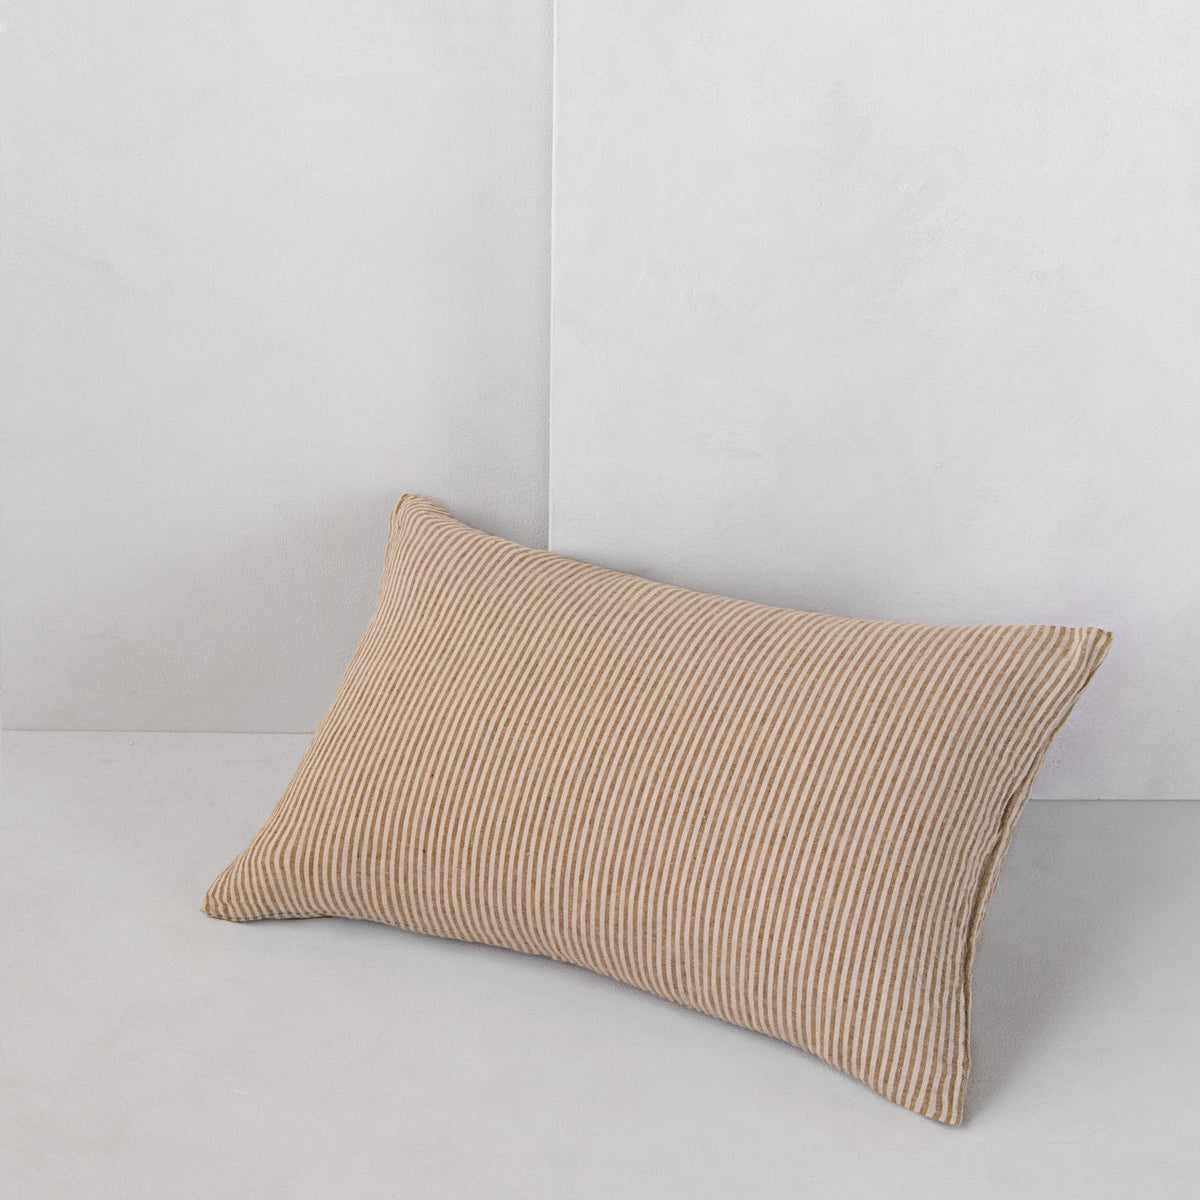 Basix Stripe Linen Cushion - Brun/Sable